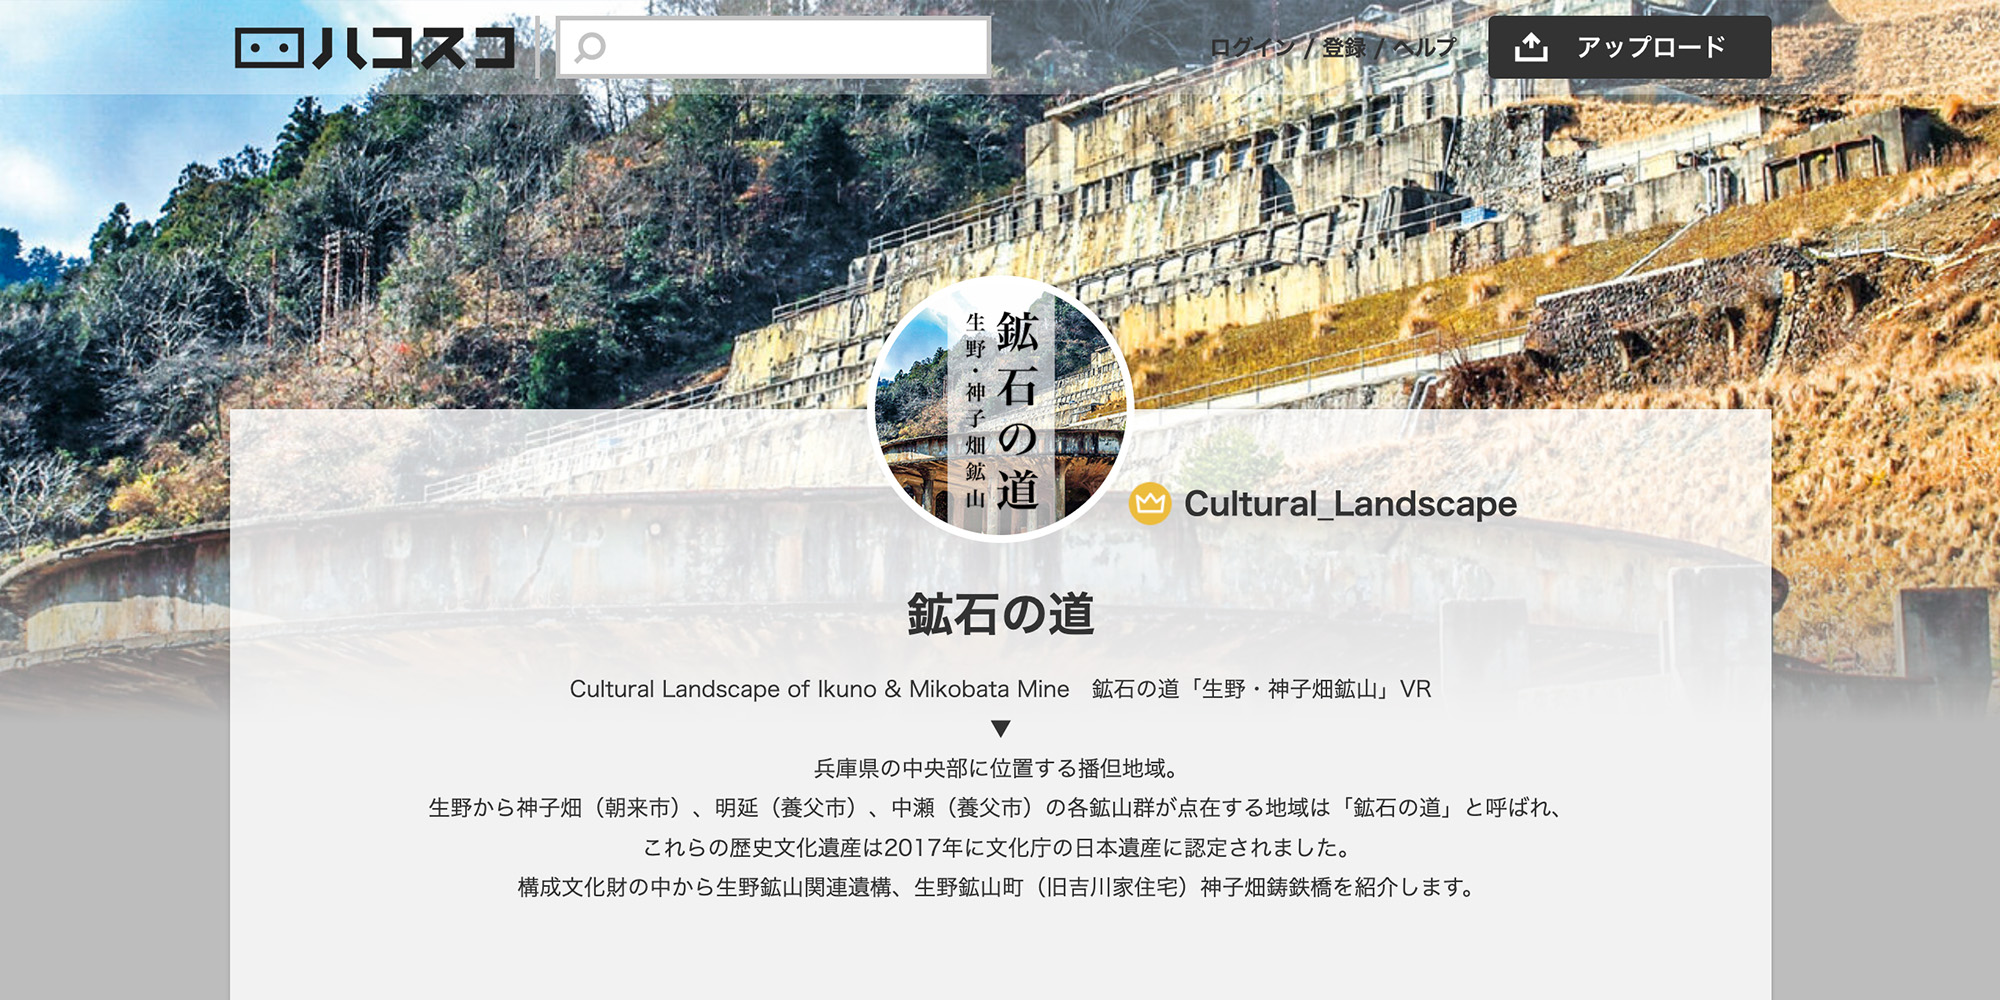 デジタルアーカイブ「鉱石の道〜生野・神子畑鉱山〜VR」を制作、貴重な文化財の観光資源をウェブVR化（多言語対応）